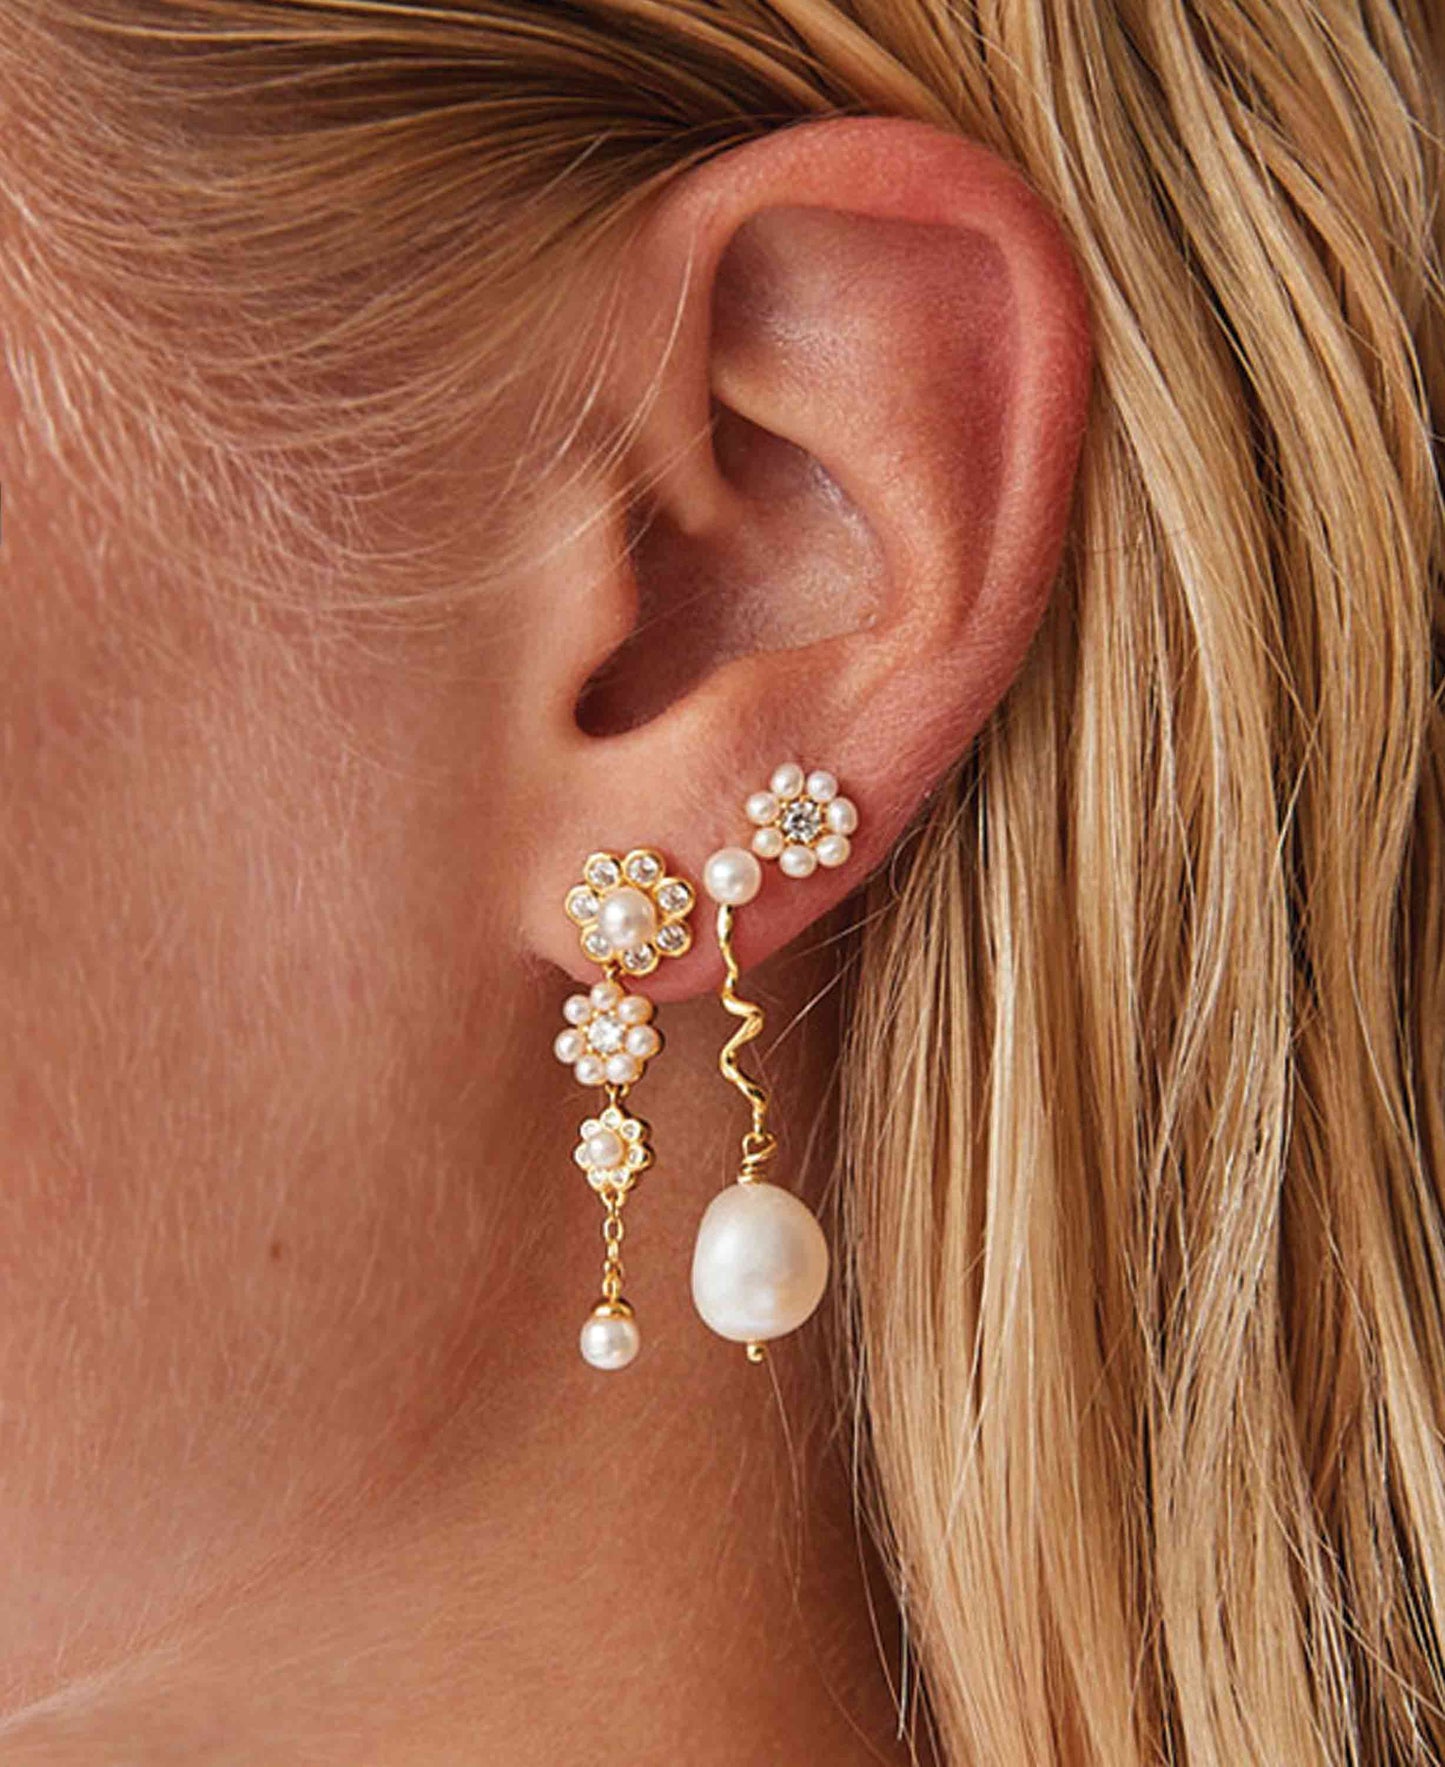 Aya tripple flower earrings